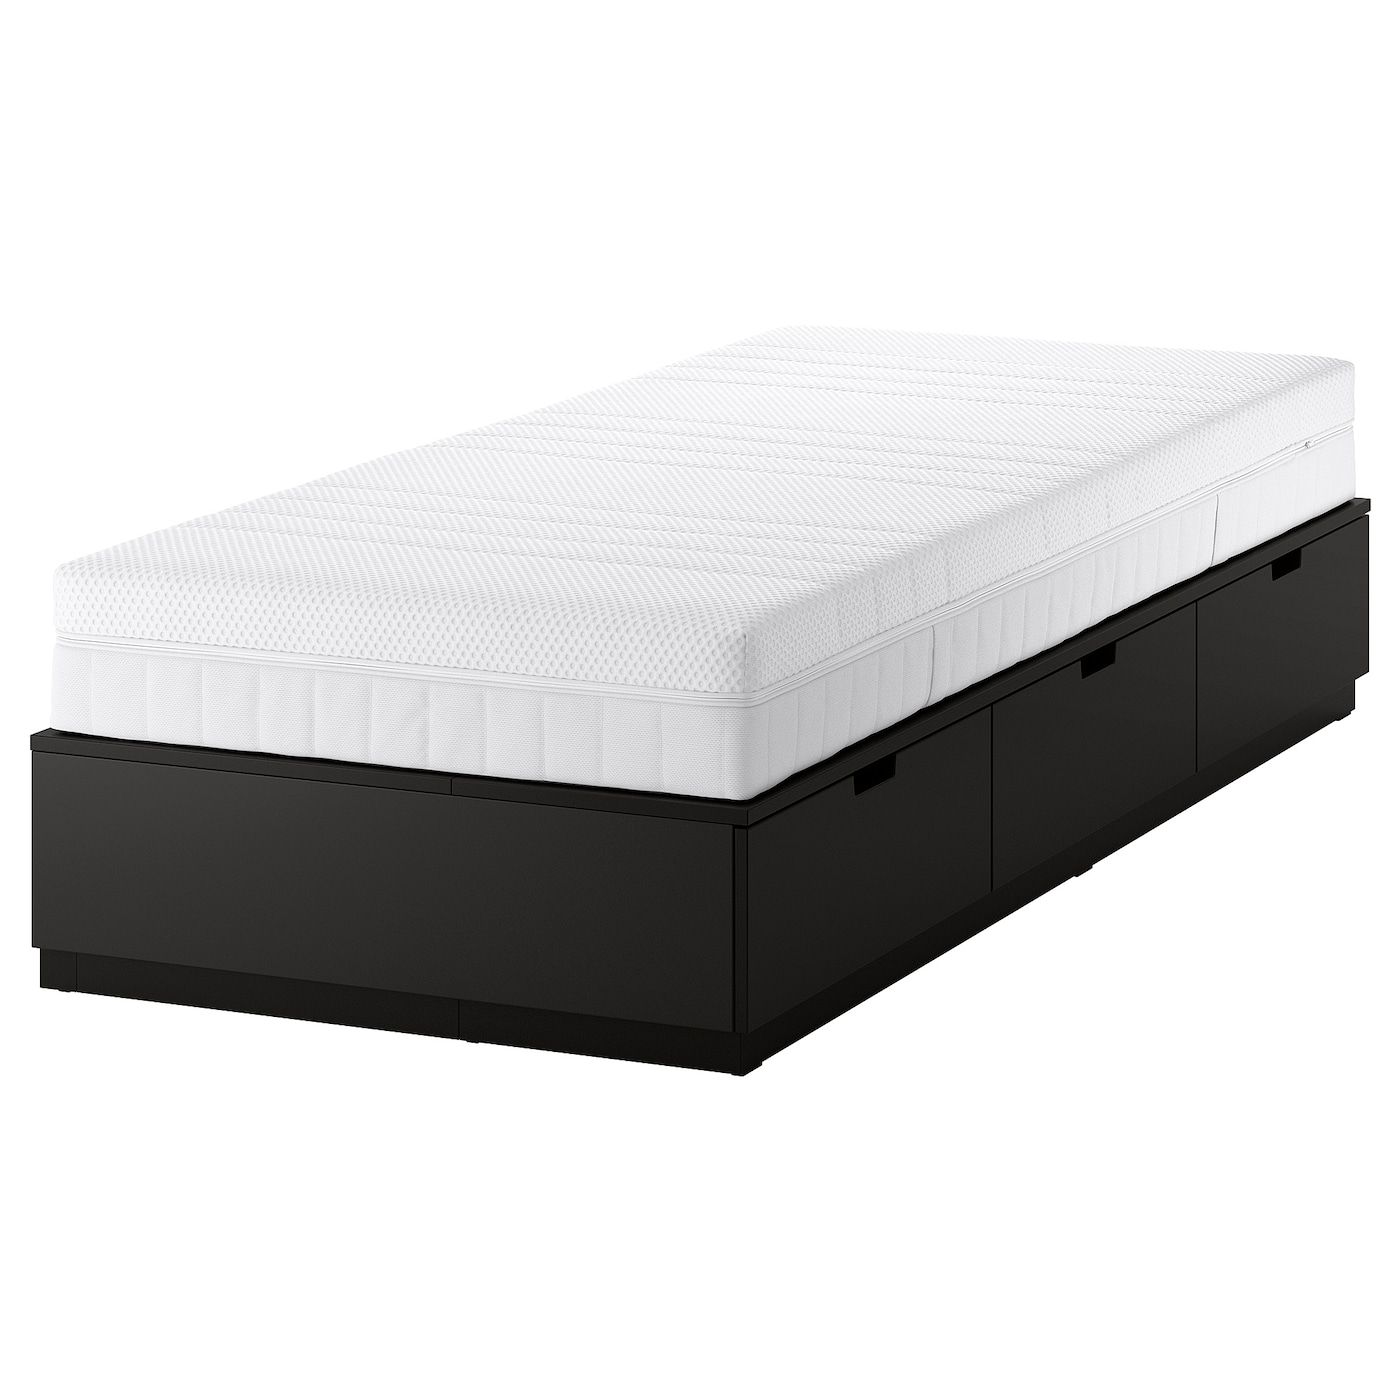 Каркас кровати с местом для хранения и матрасом - IKEA NORDLI, 200х90 см, матрас жесткий, черный, НОРДЛИ ИКЕА